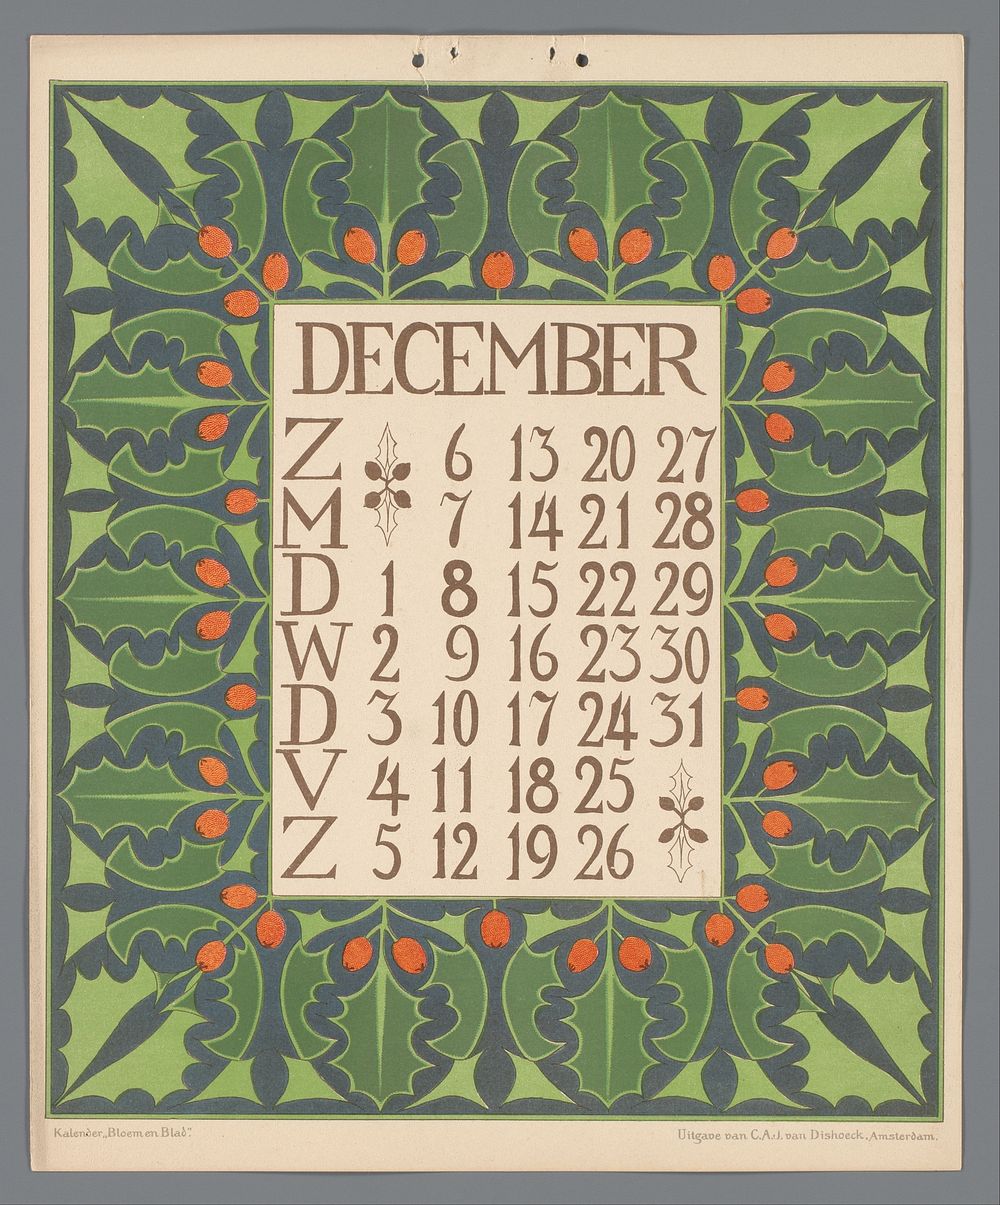 Kalender 'Bloem en blad' met december (c. 1900 - c. 1910) by Gebroeders Braakensiek, Netty van der Waarden, Gebroeders…